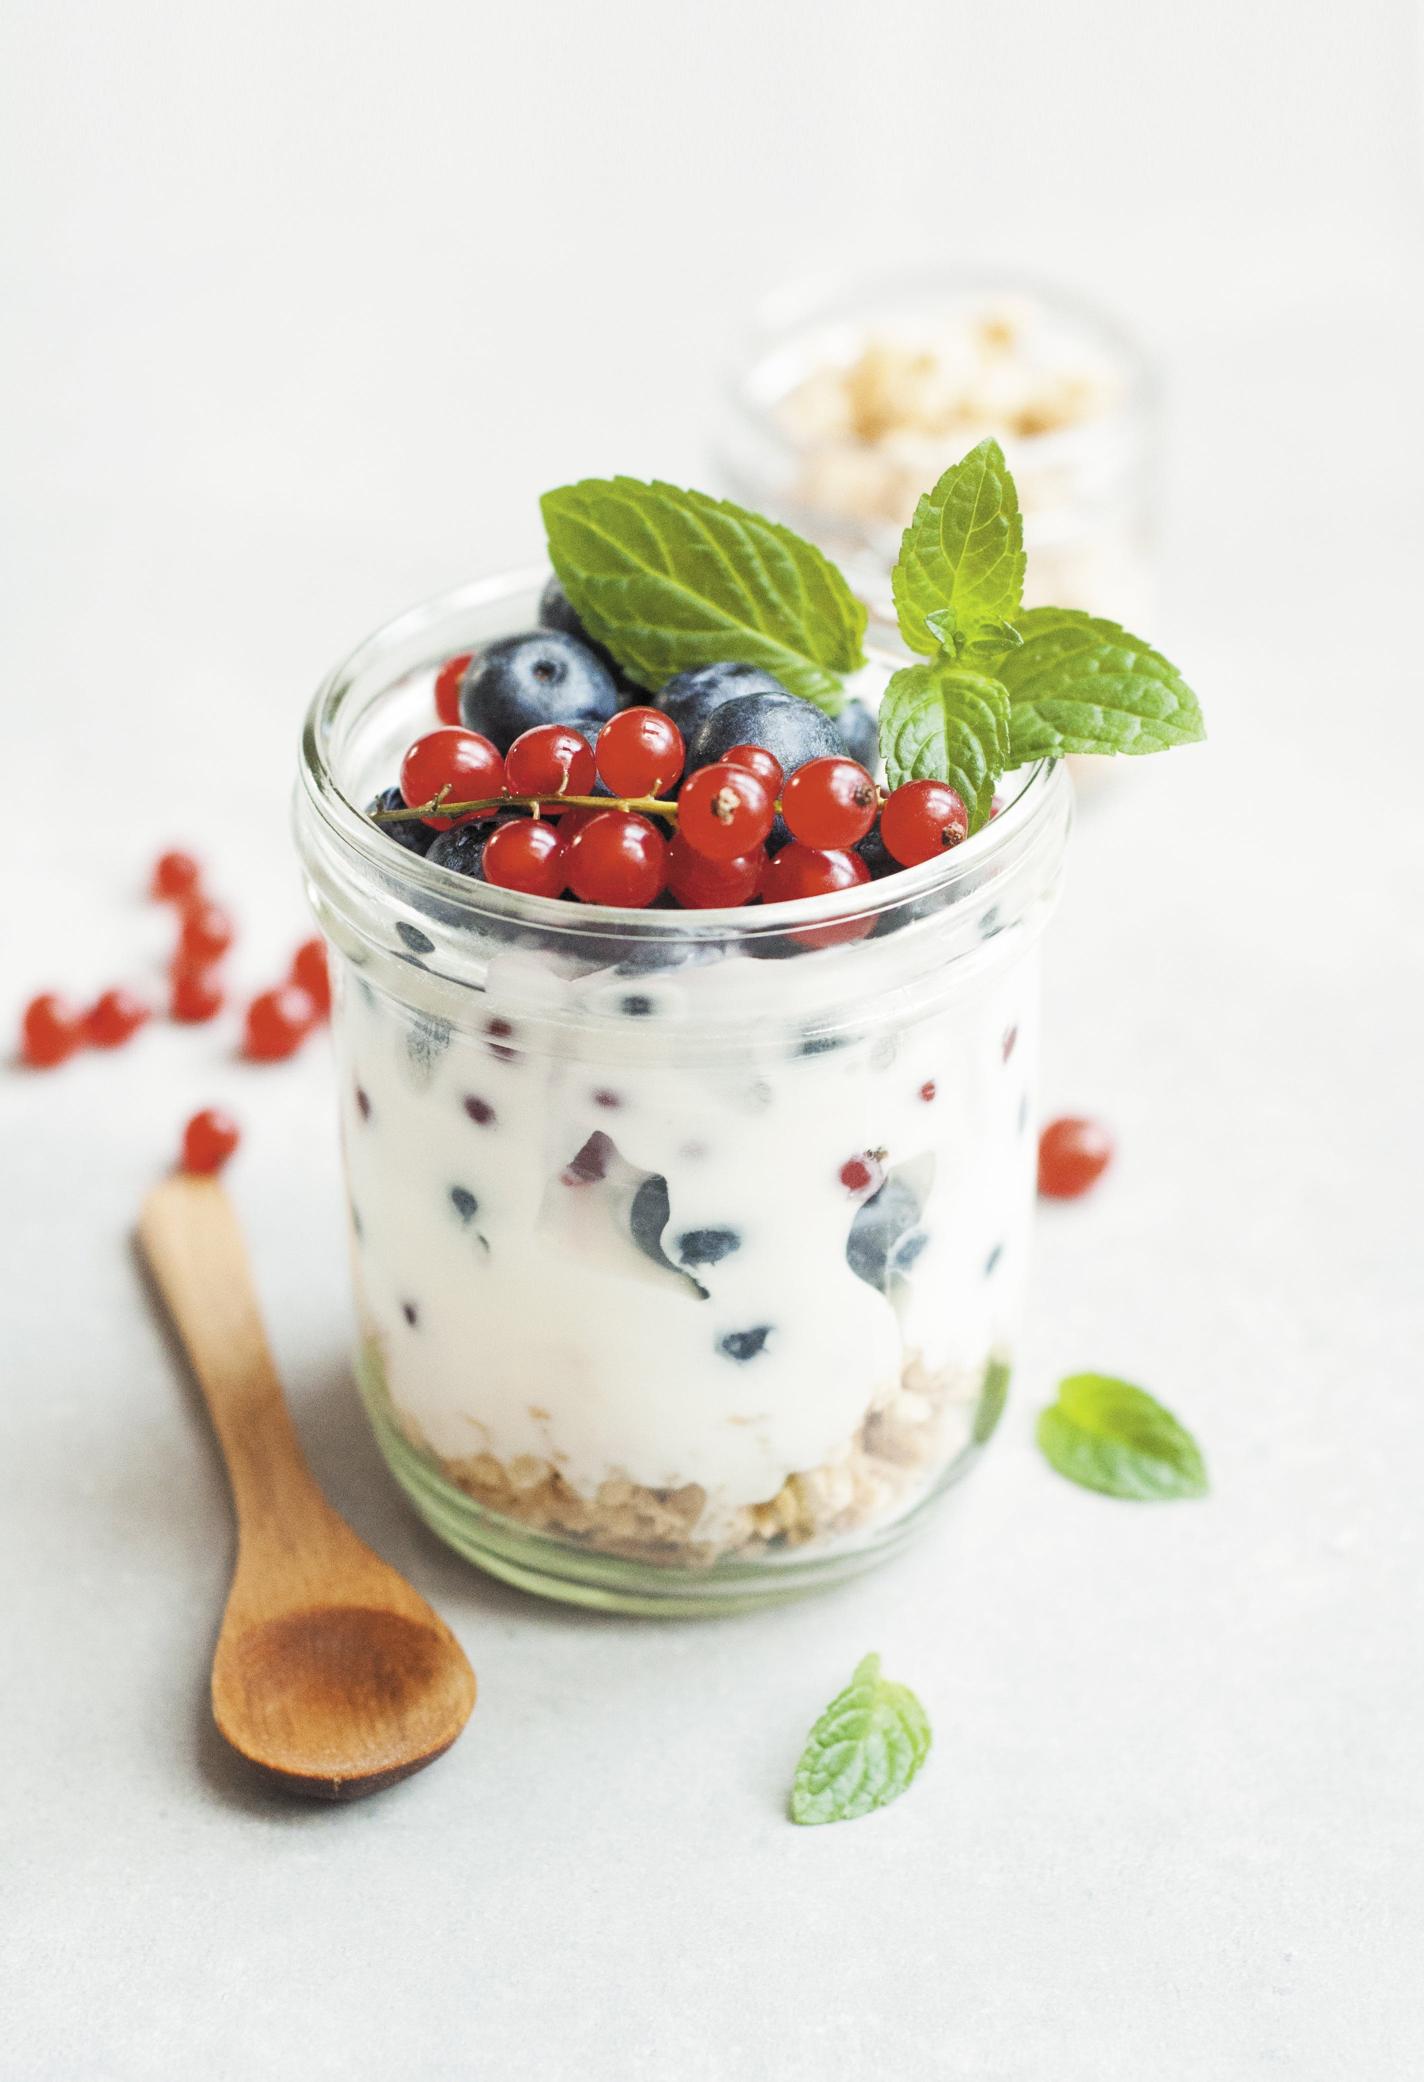 L'importanza dello yogurt per la salute intestinale